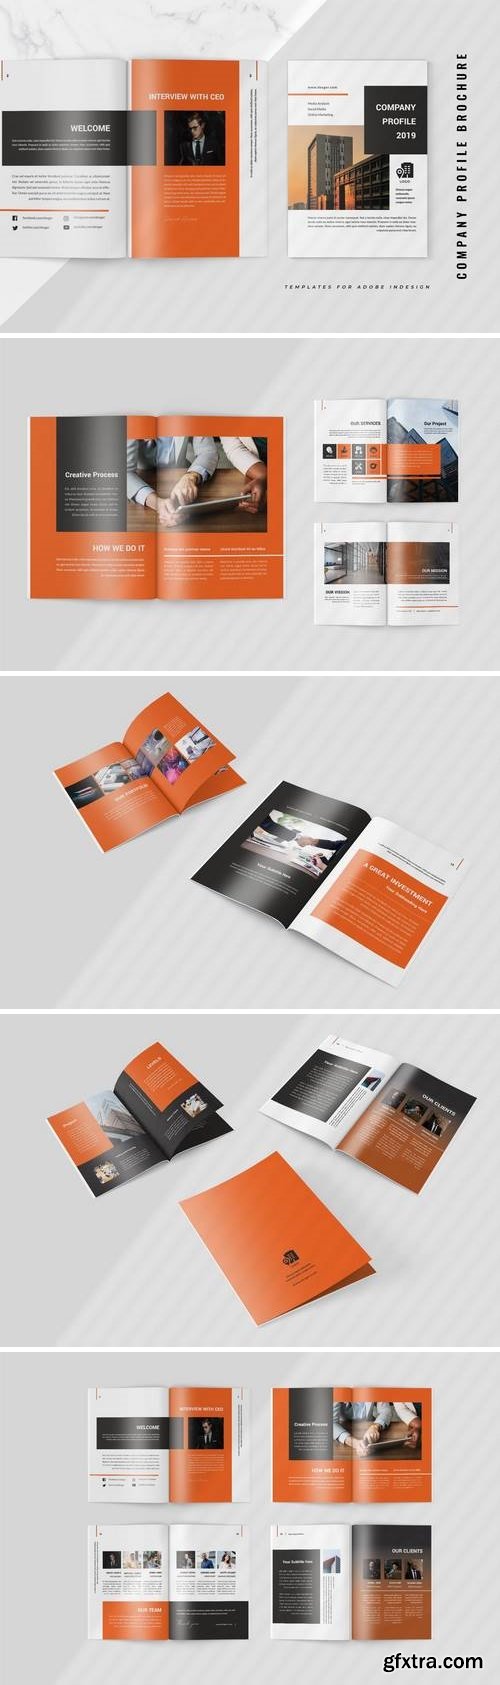 Desger - Company Profile Brochure Template